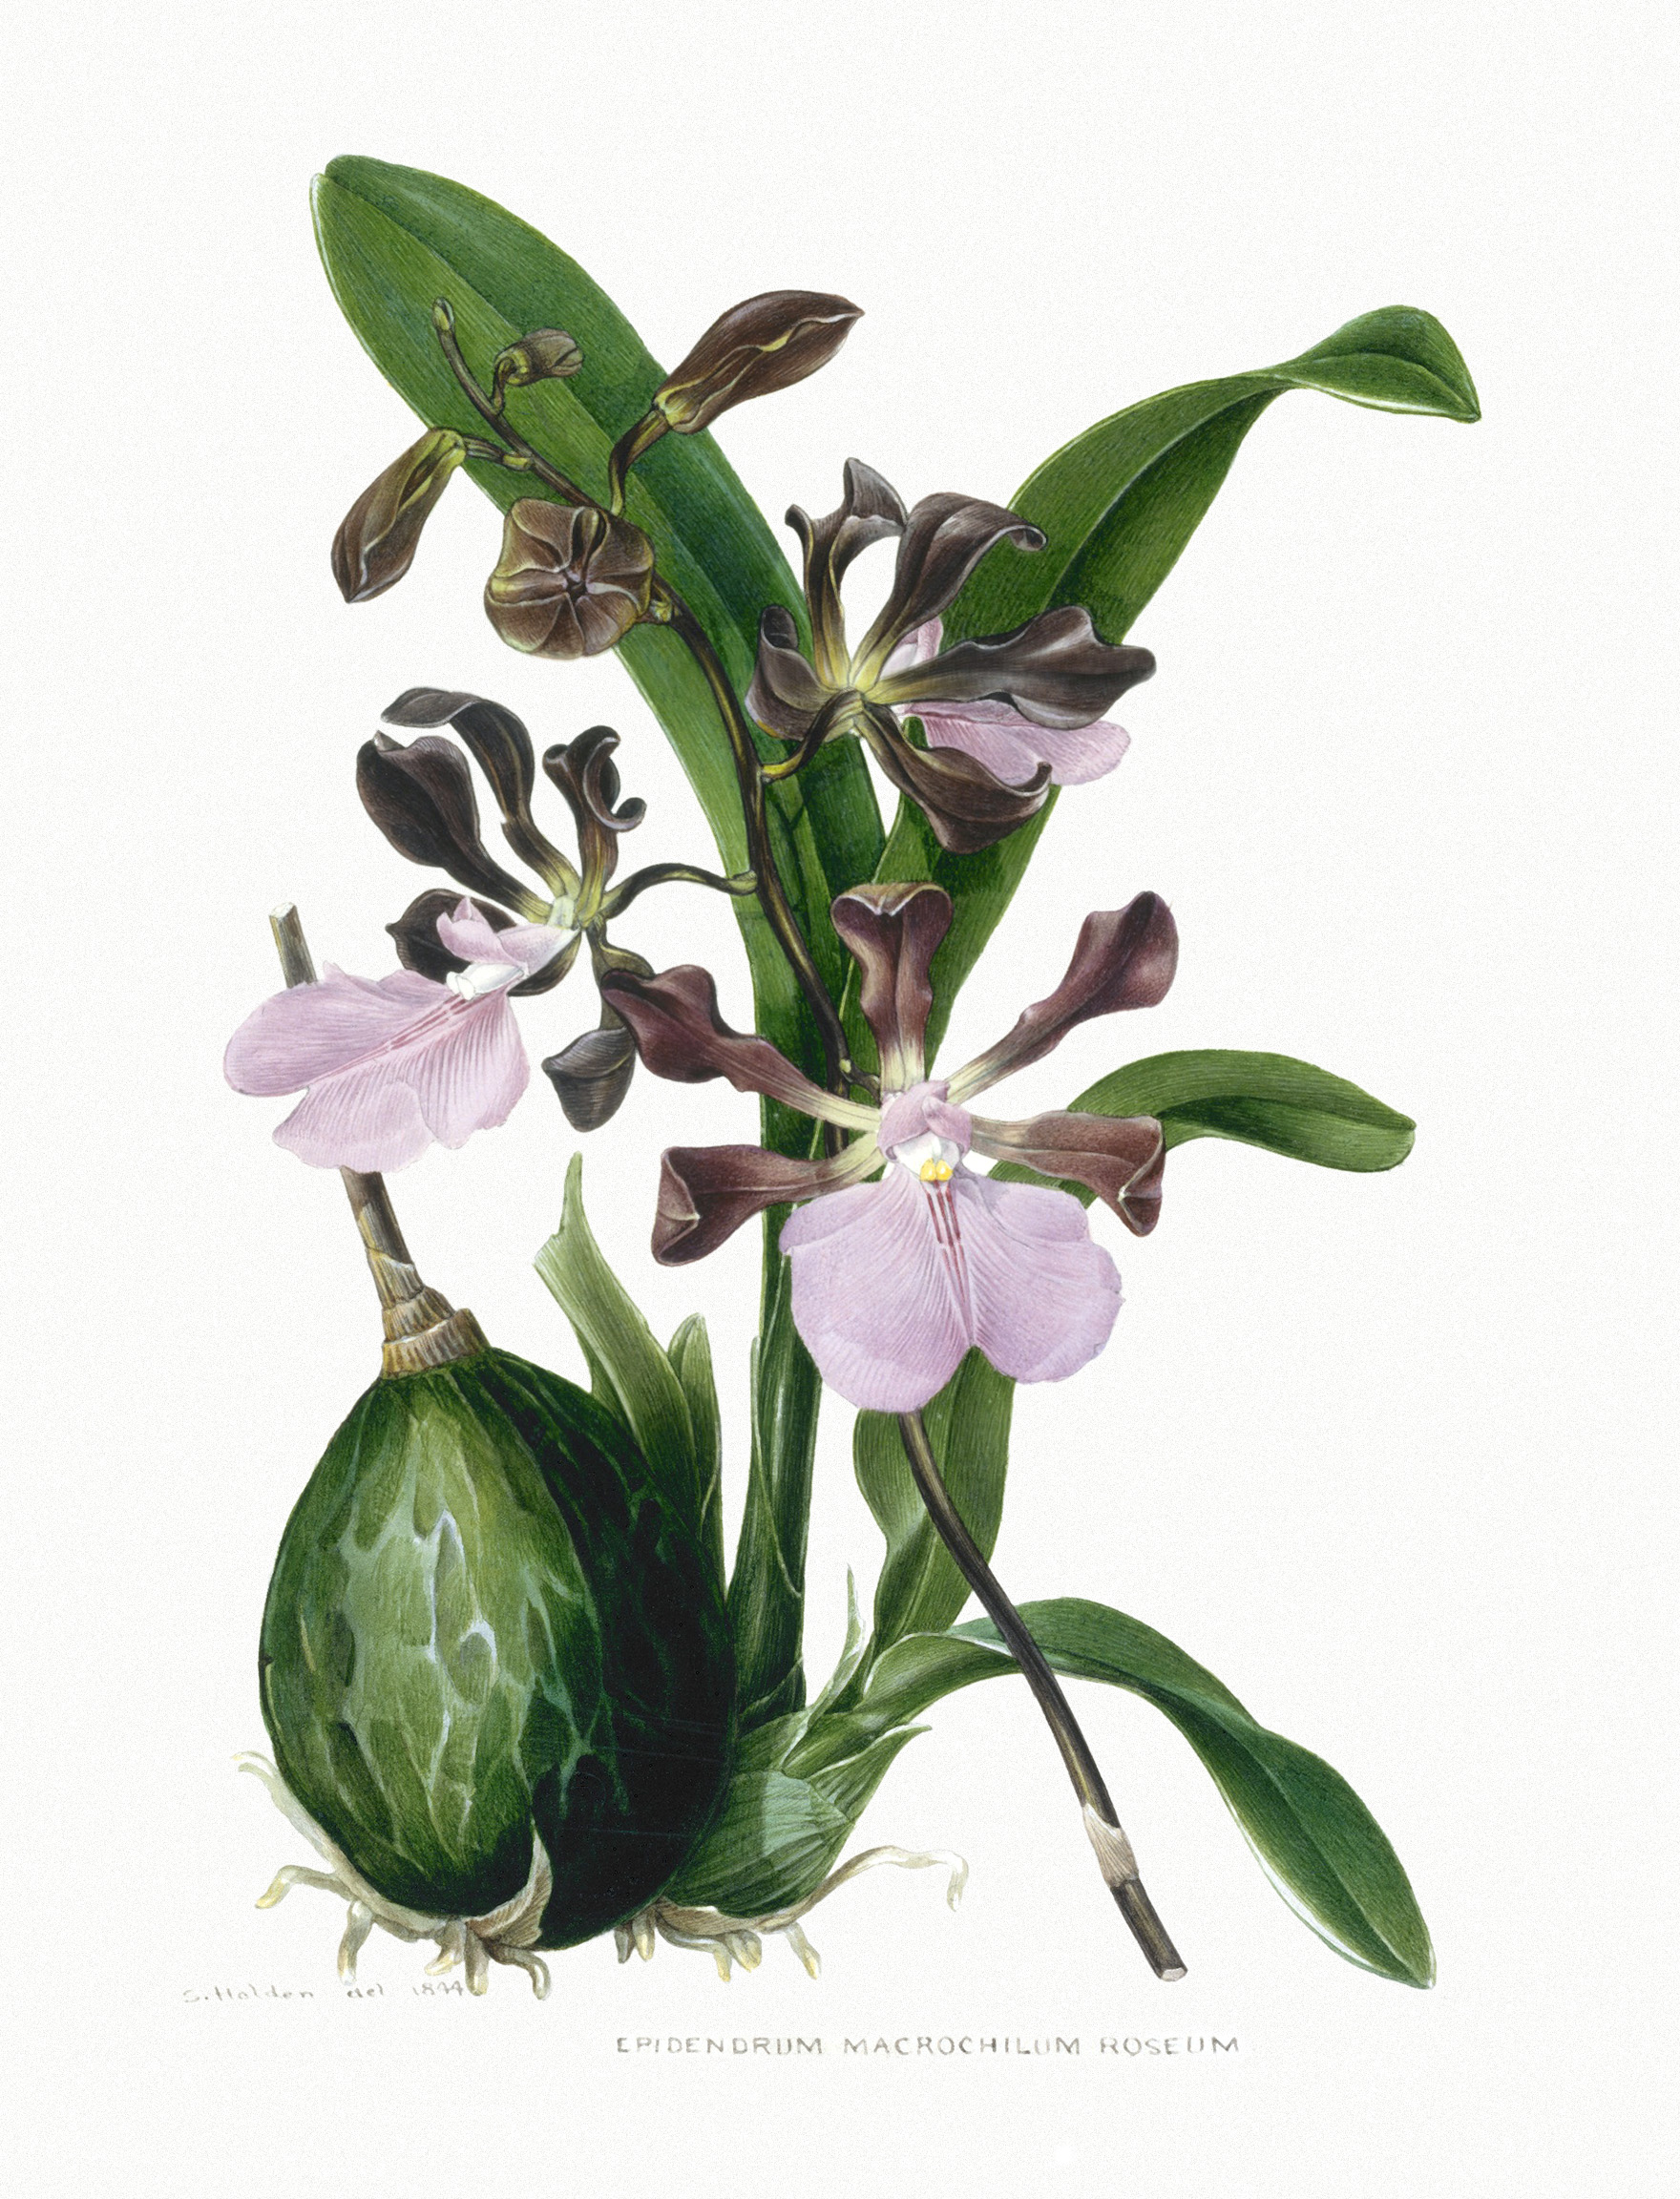 Orchid - Epidendrum Macrochilum Roseum